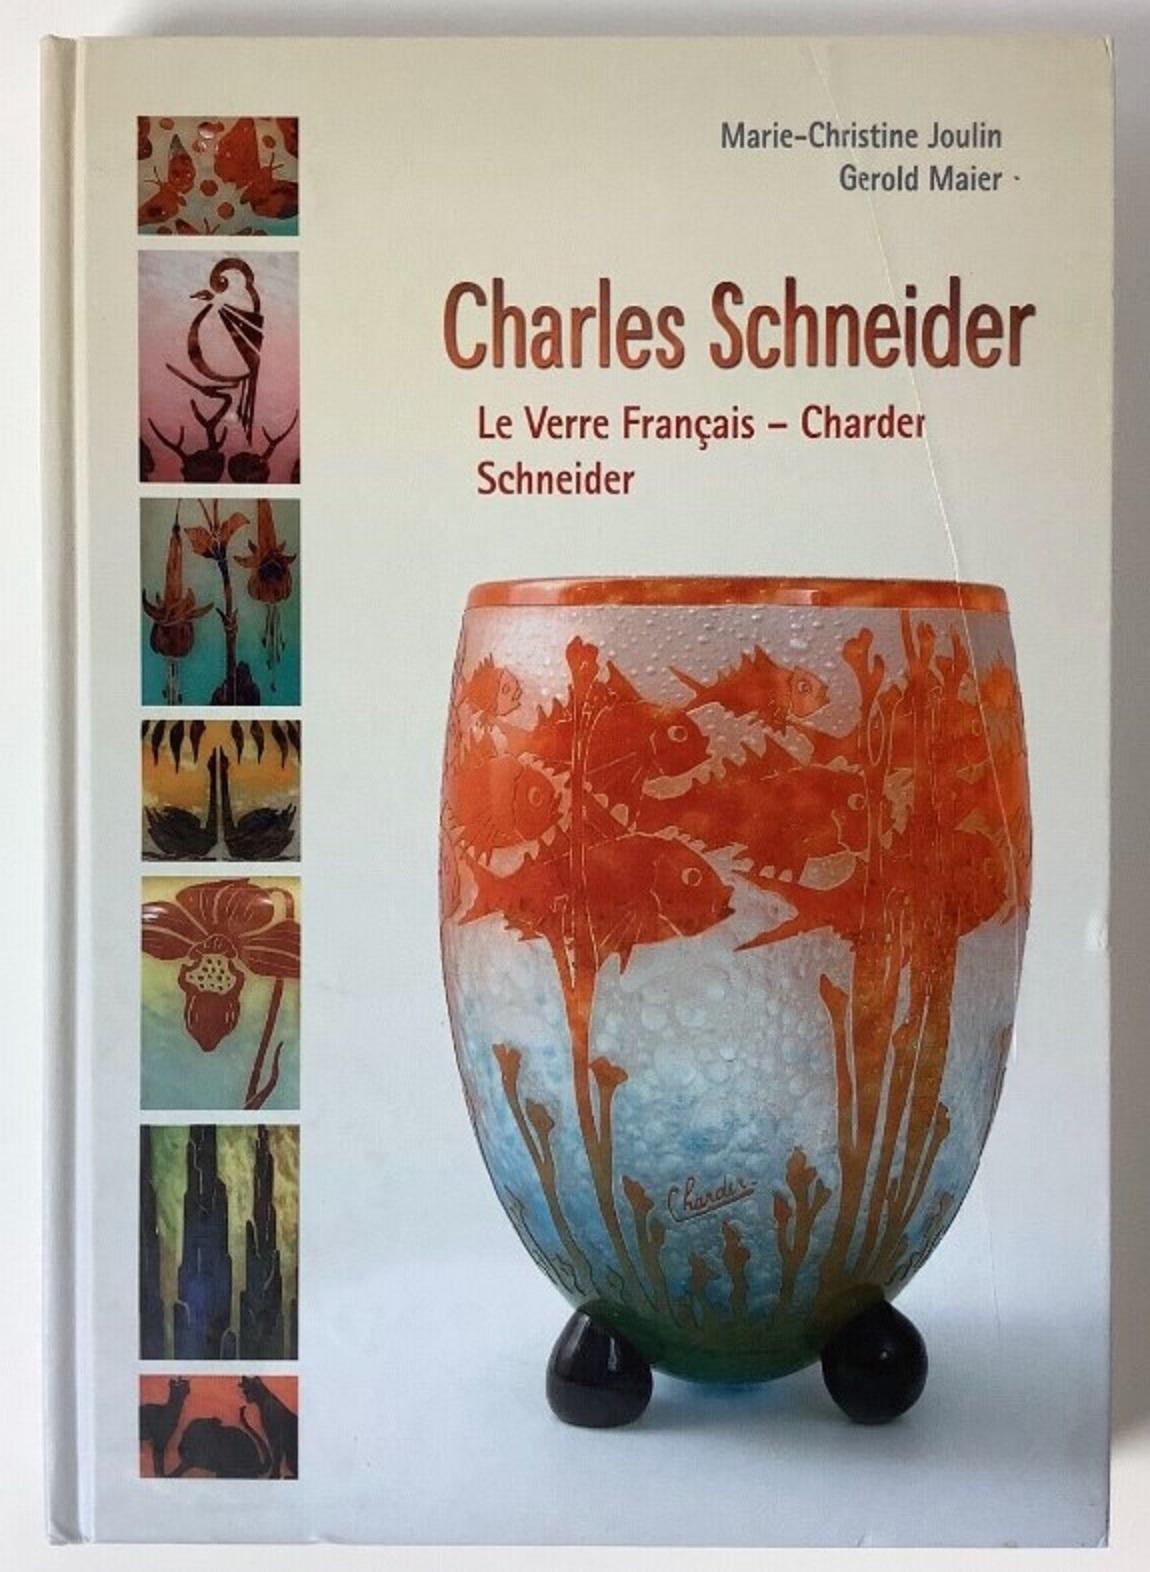 Vase Le Verre Francais 
acide travaillé
Le verre à camée Le Verre était une ligne distincte de verre d'art conçue par Charles Schneider. Sa production s'est faite en même temps que celle des lunettes conçues par Schneider entre 1918 et 1933. Mais à